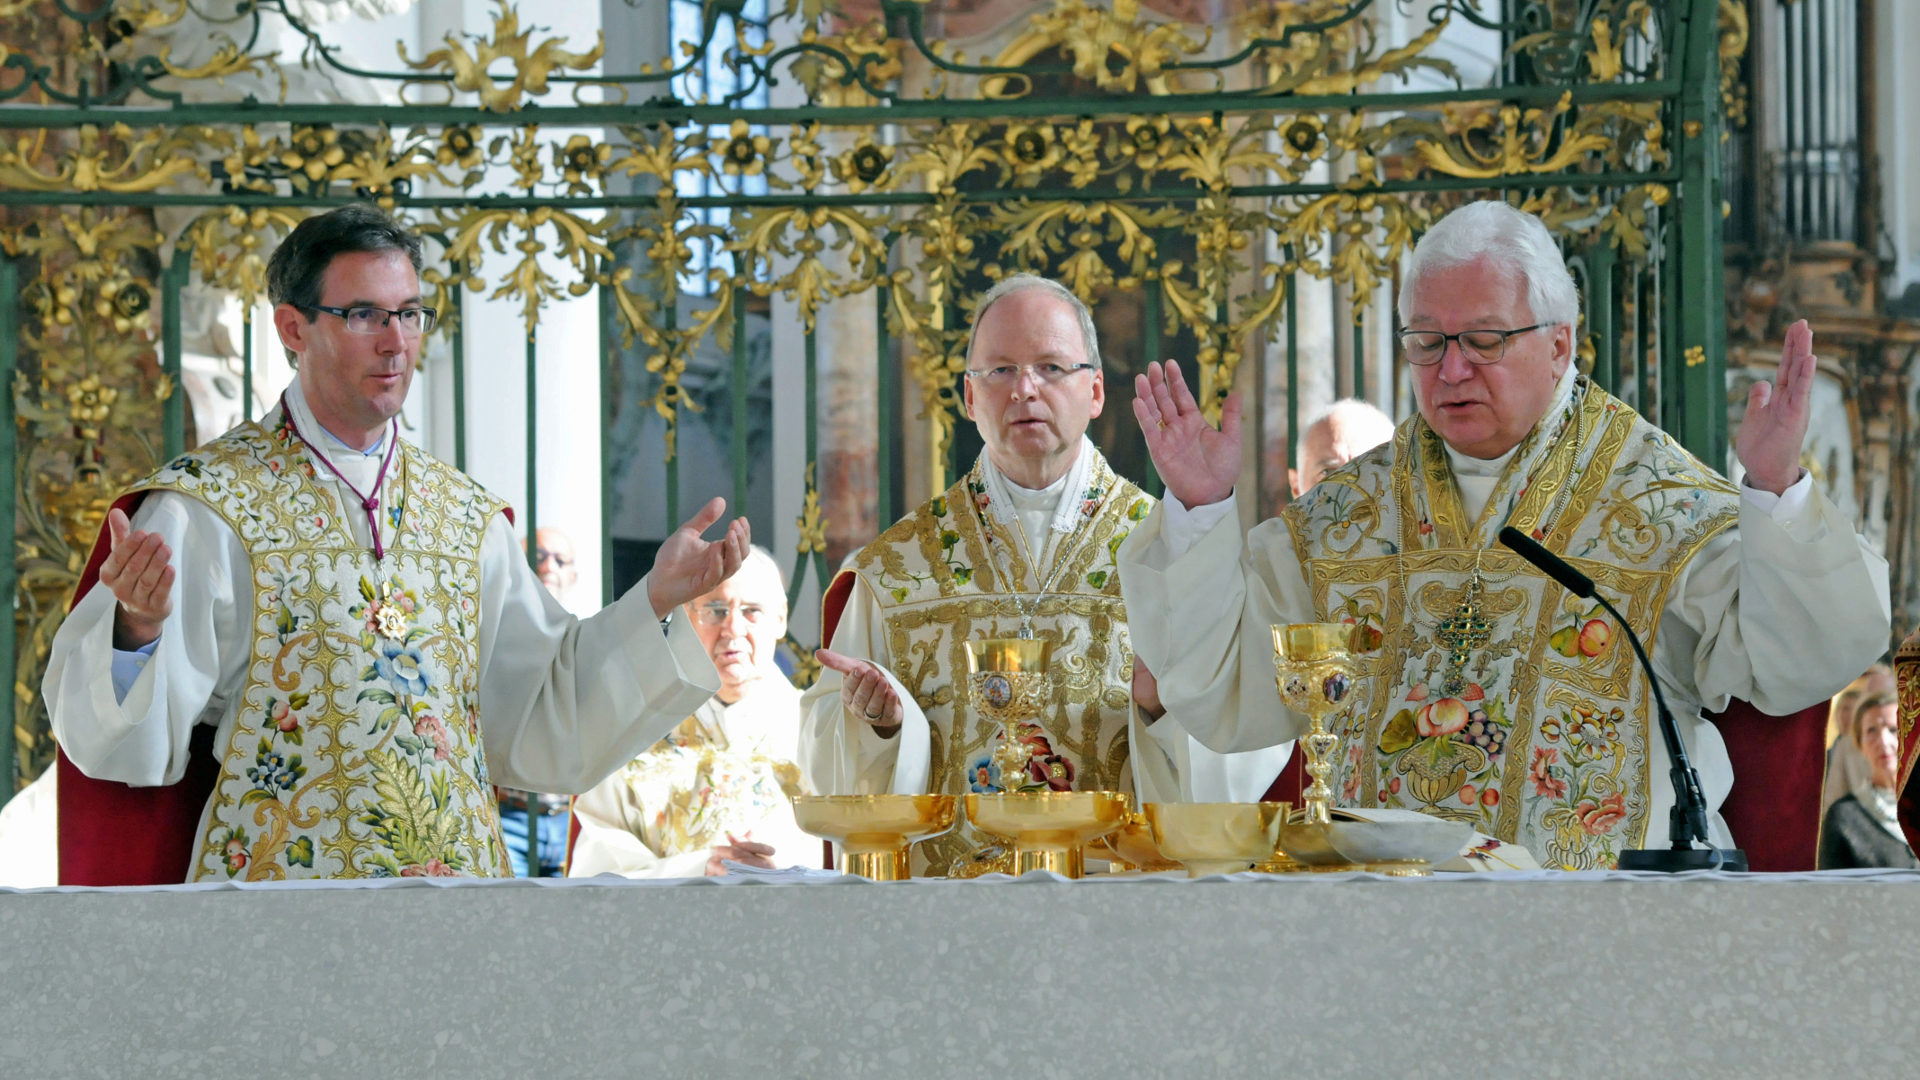 Altar v.l.: Dompfarrer Beat Grögli, Bischof Benno Elbs und Bischof Markus Büchel.